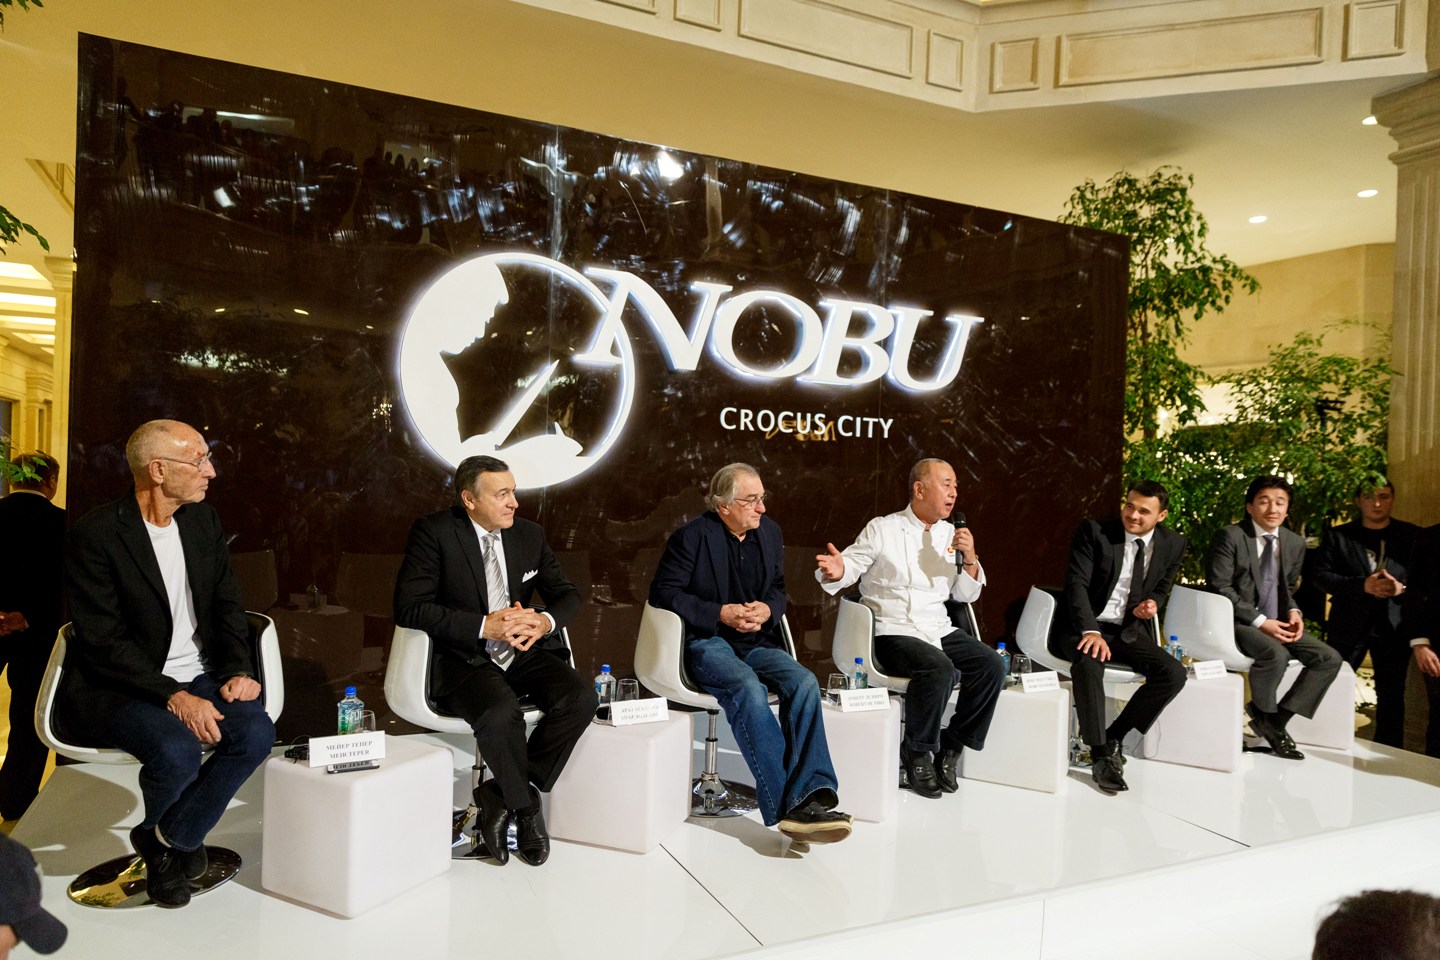 Новости к этому часу крокус сити. Nobu Crocus City. Нобу Москва открытие. Ресторан Nobu основатель.